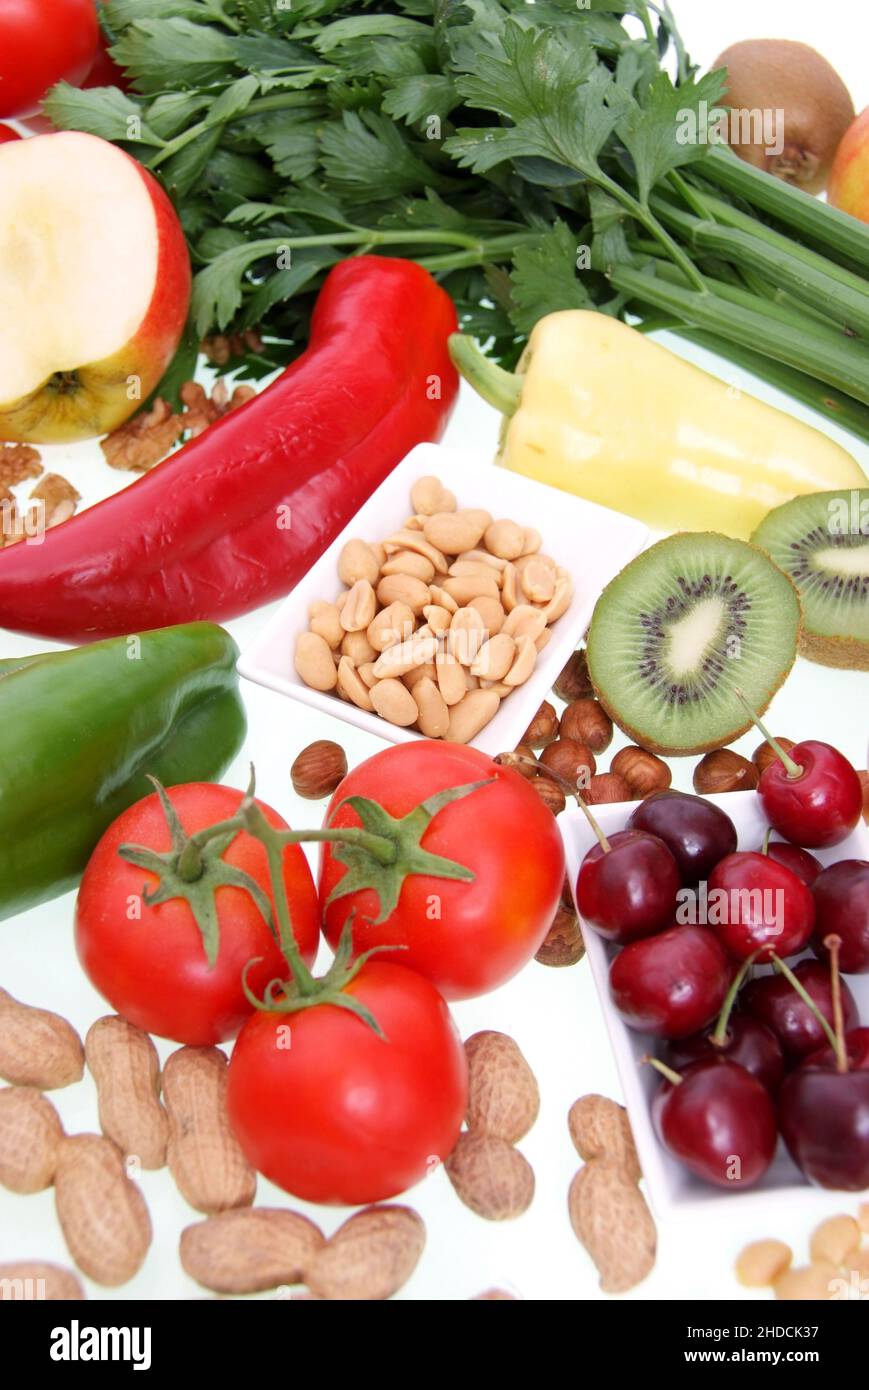 Symbolfoto gesunde Ernährung, Obst, Gemüse, Nüsse, Kirschen, Erdnüsse, Paproka, Tomaten, Rettich, Walnüsse, Kiwi, Apfel, Stock Photo